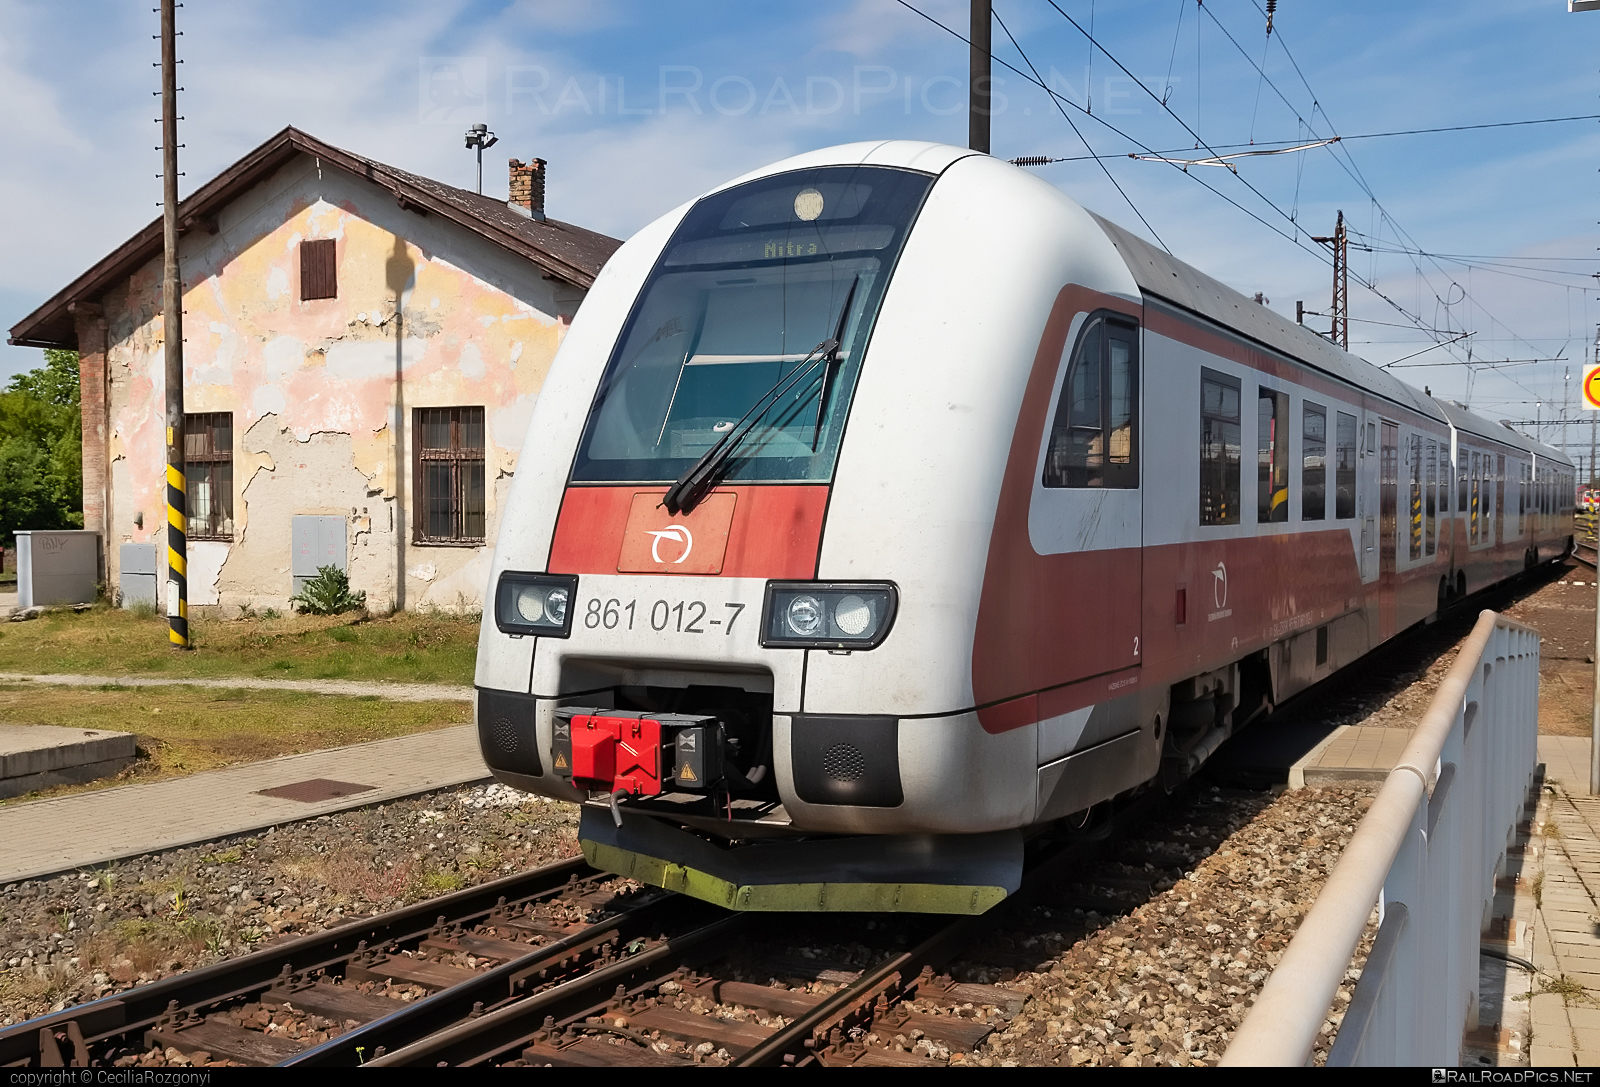 ŽOS Vrútky Class 861.0 - 861 012-07 operated by Železničná Spoločnost' Slovensko, a.s. #ZeleznicnaSpolocnostSlovensko #dunihlav #husenica #zosvrutky #zosvrutky861 #zosvrutky8610 #zssk #zssk861 #zssk8610